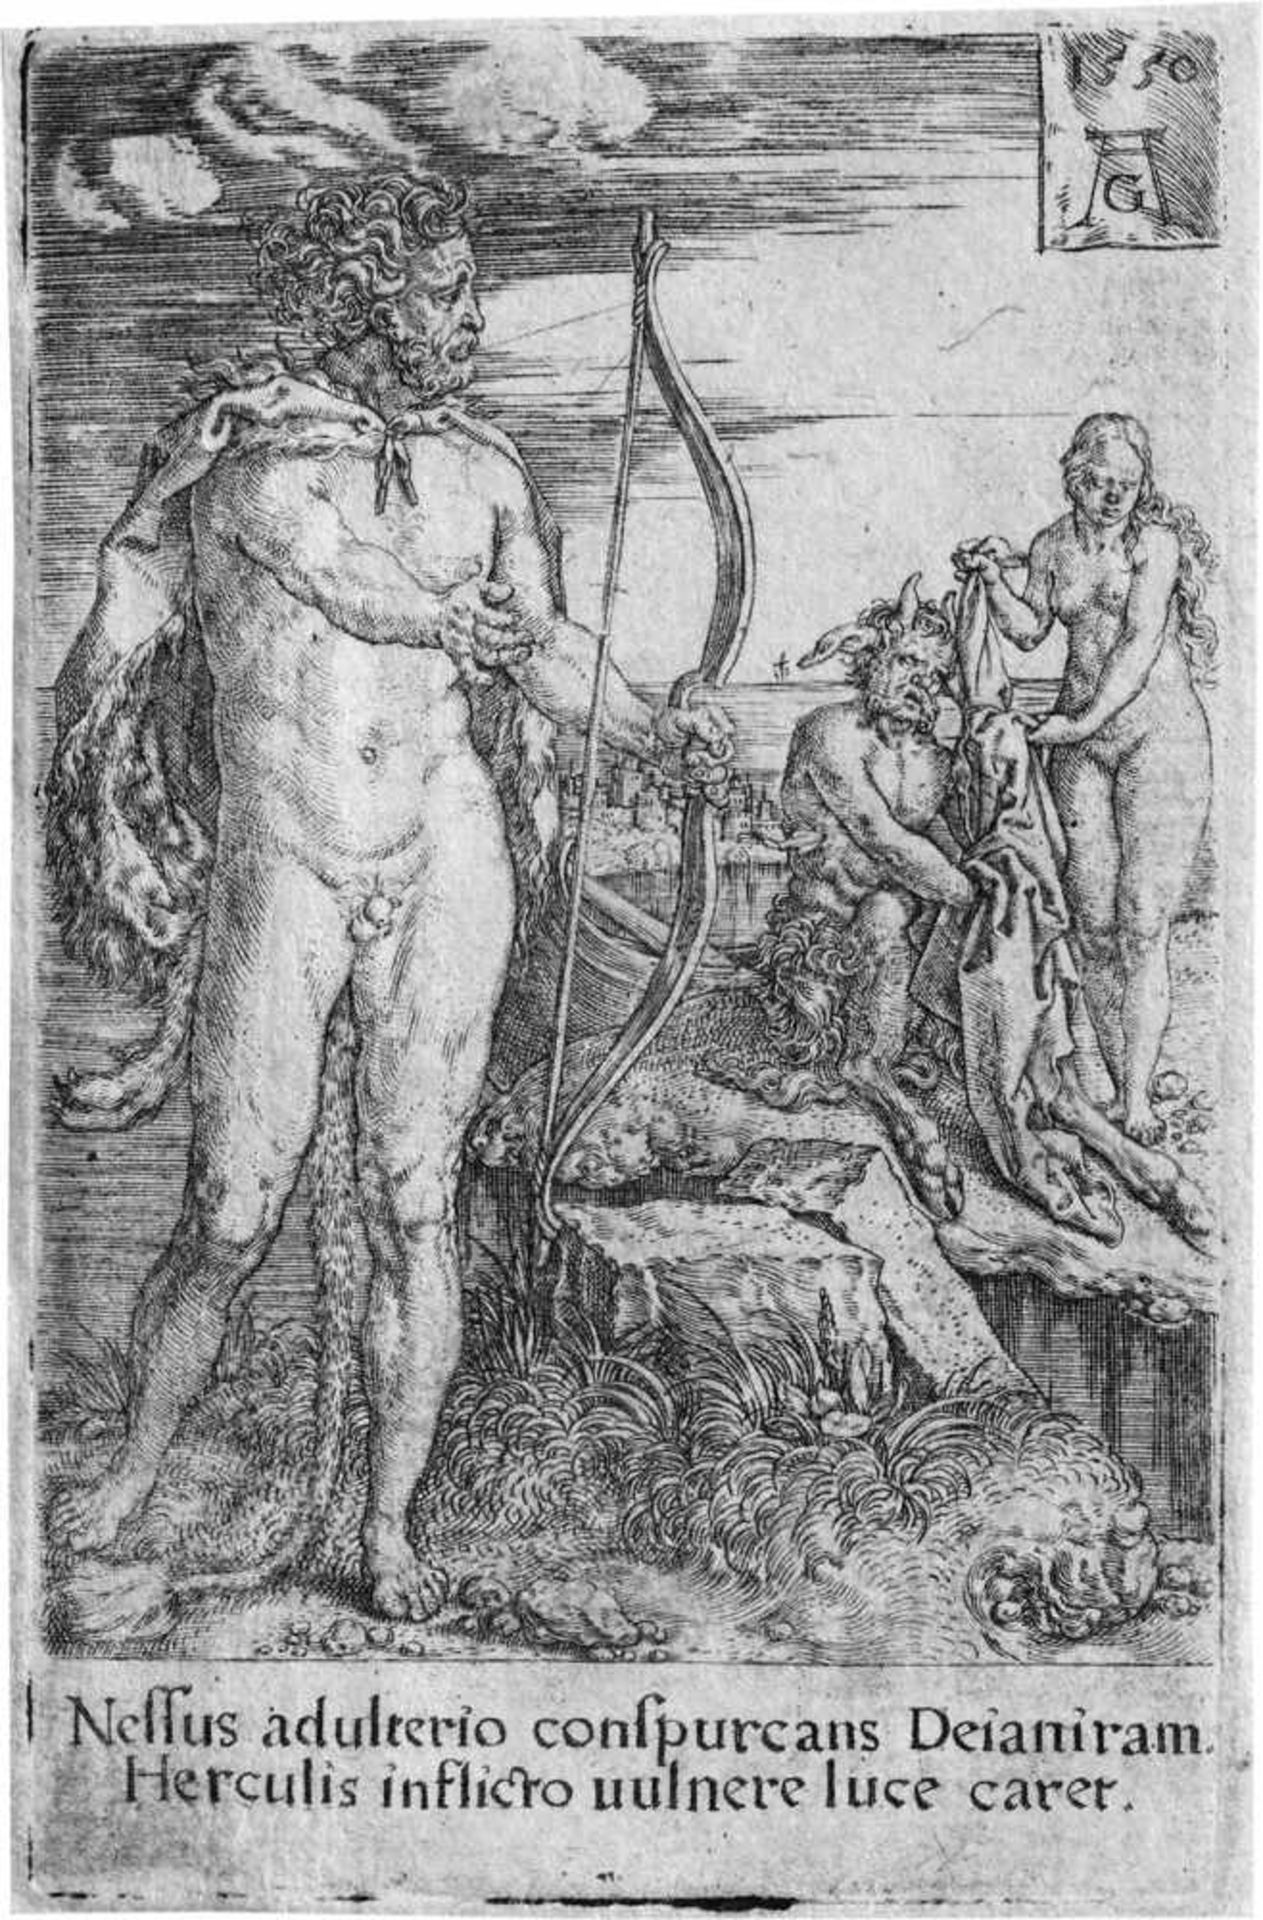 Aldegrever, Heinrich: Die Säulen des HerkulesDie Säulen des Herkules. Kupferstich. 9,4 x 6,8 cm.